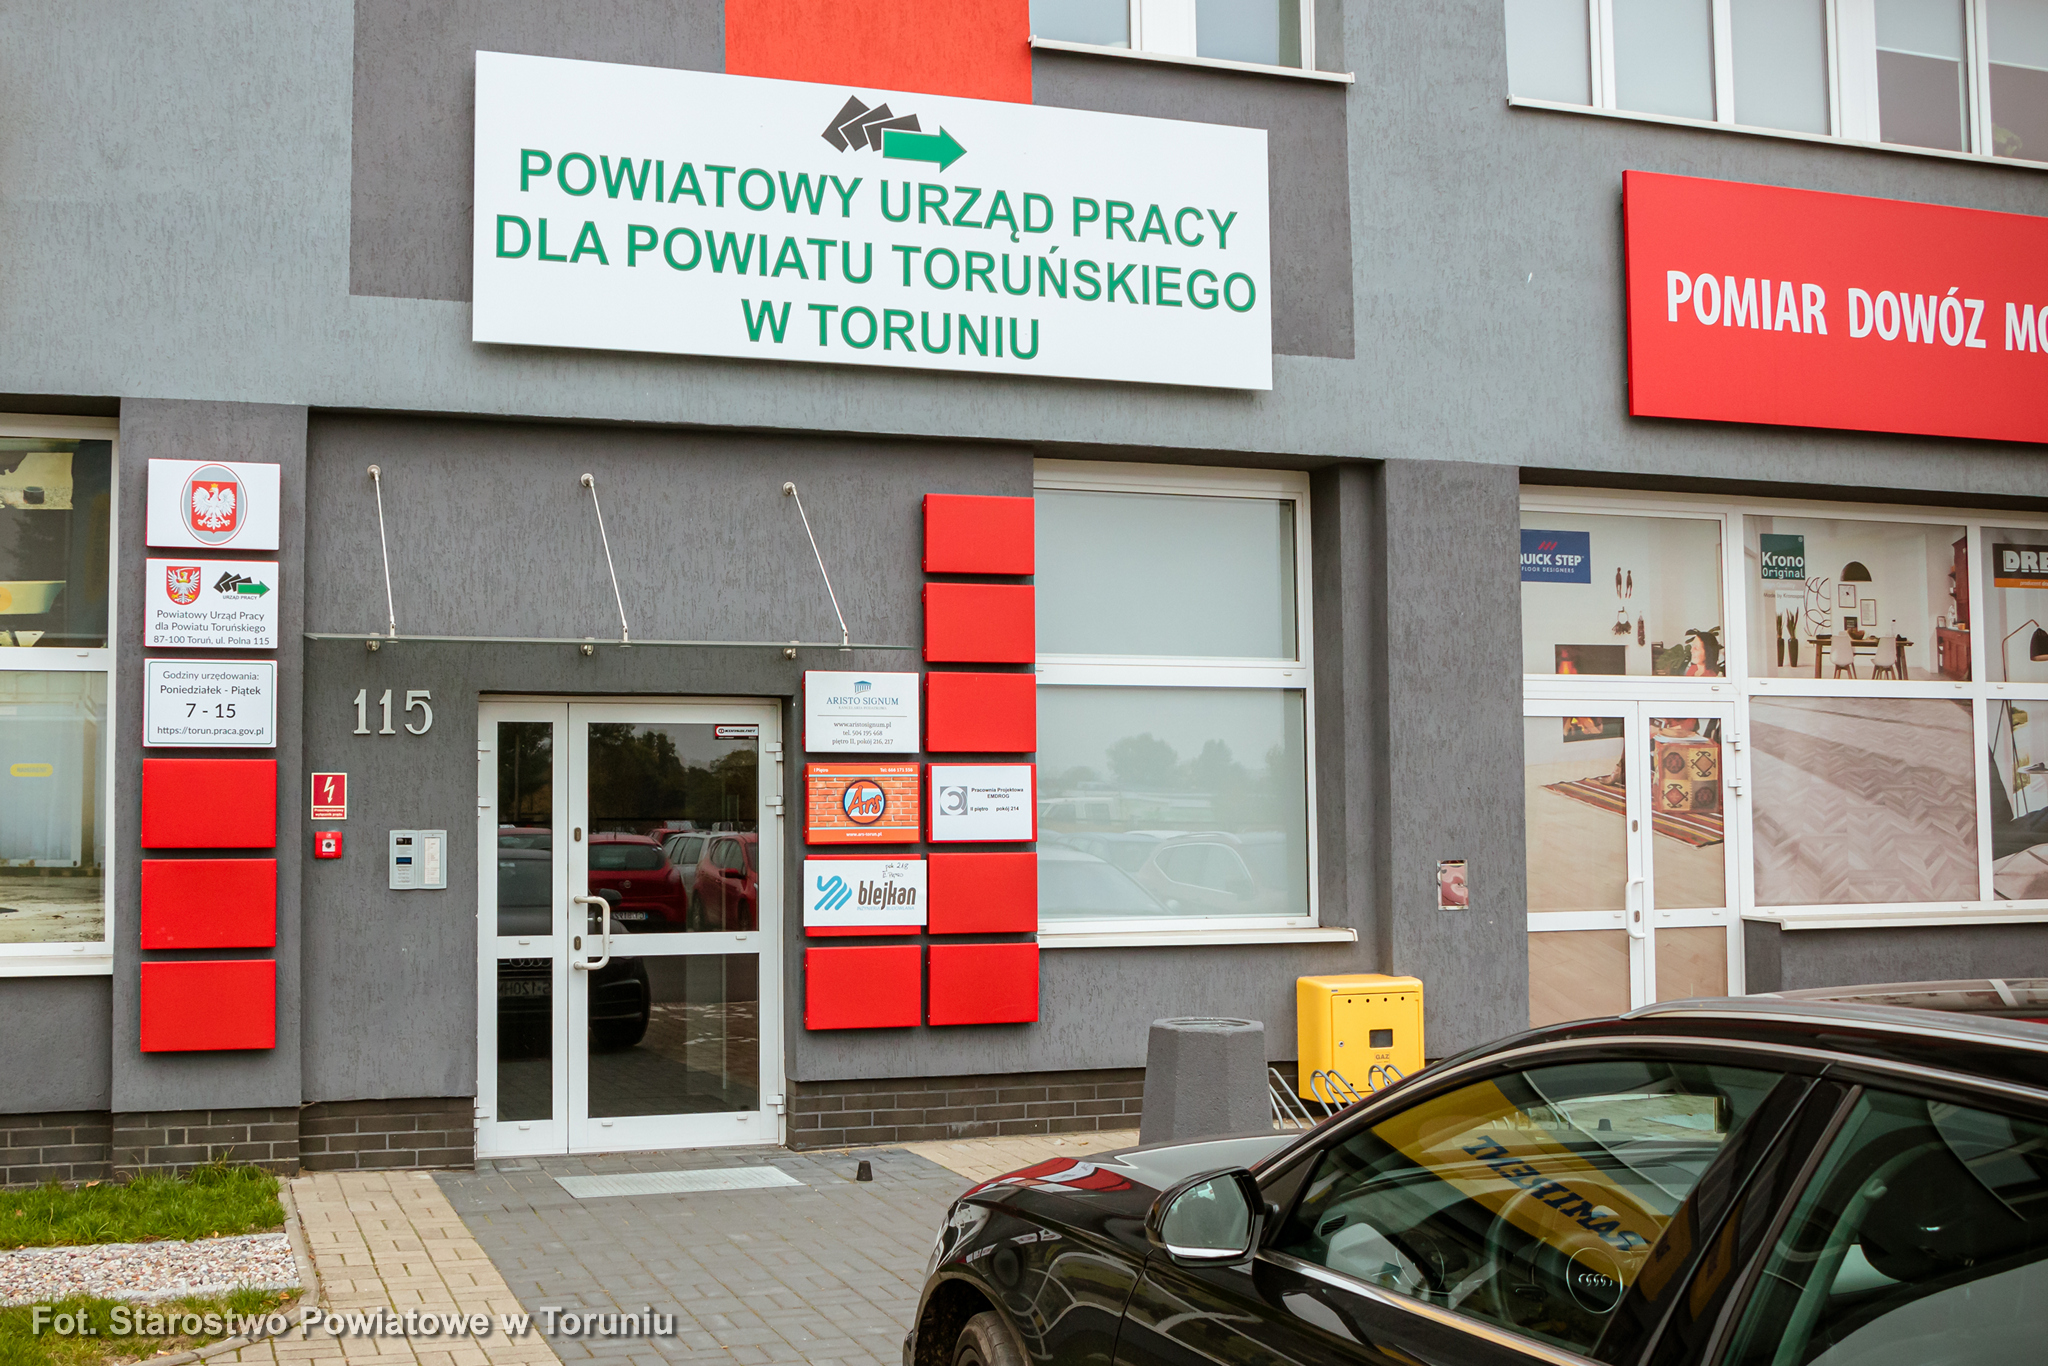 Utrudnienia w obsłudze klientów w PUP dla PT przy ul. Polnej 115 w Toruniu